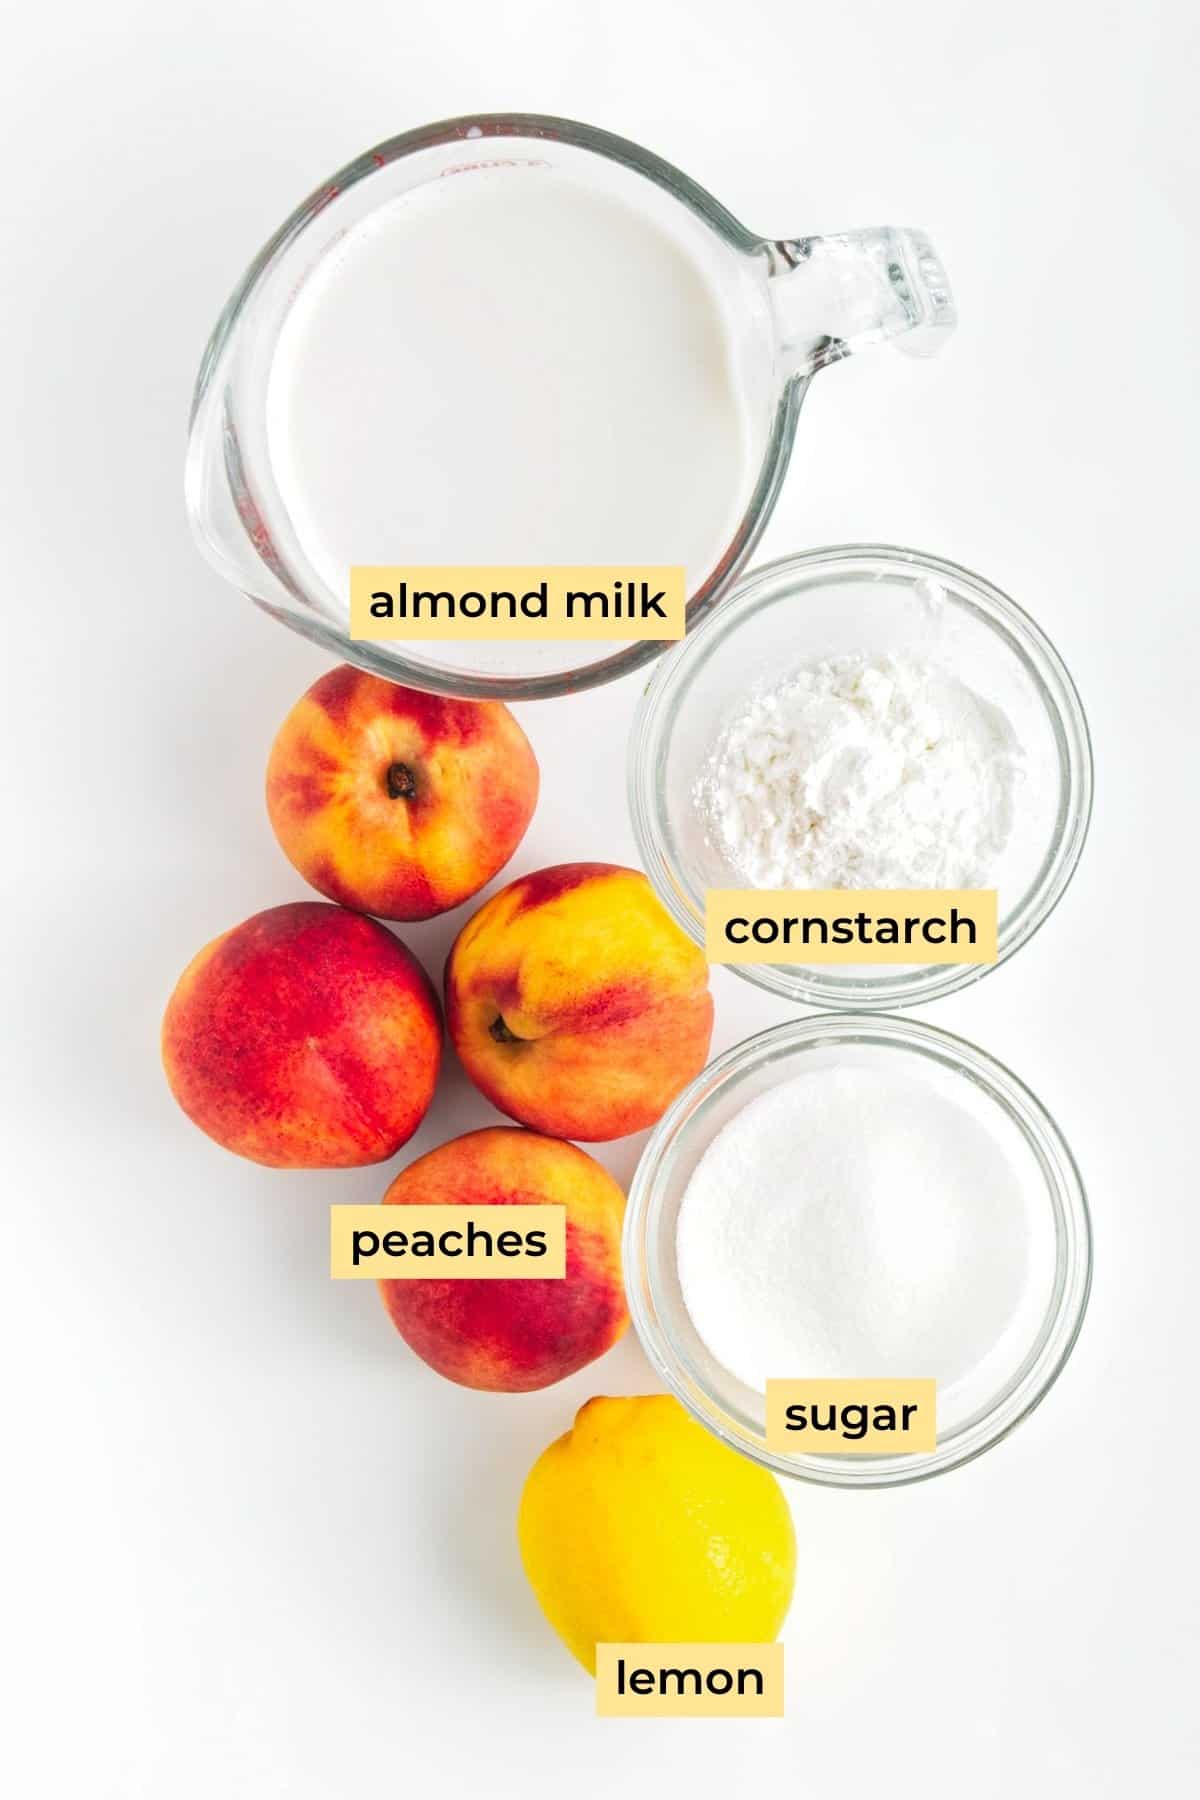 Ingredients: almond milk, peaches, cornstarch, sugar, lemon.